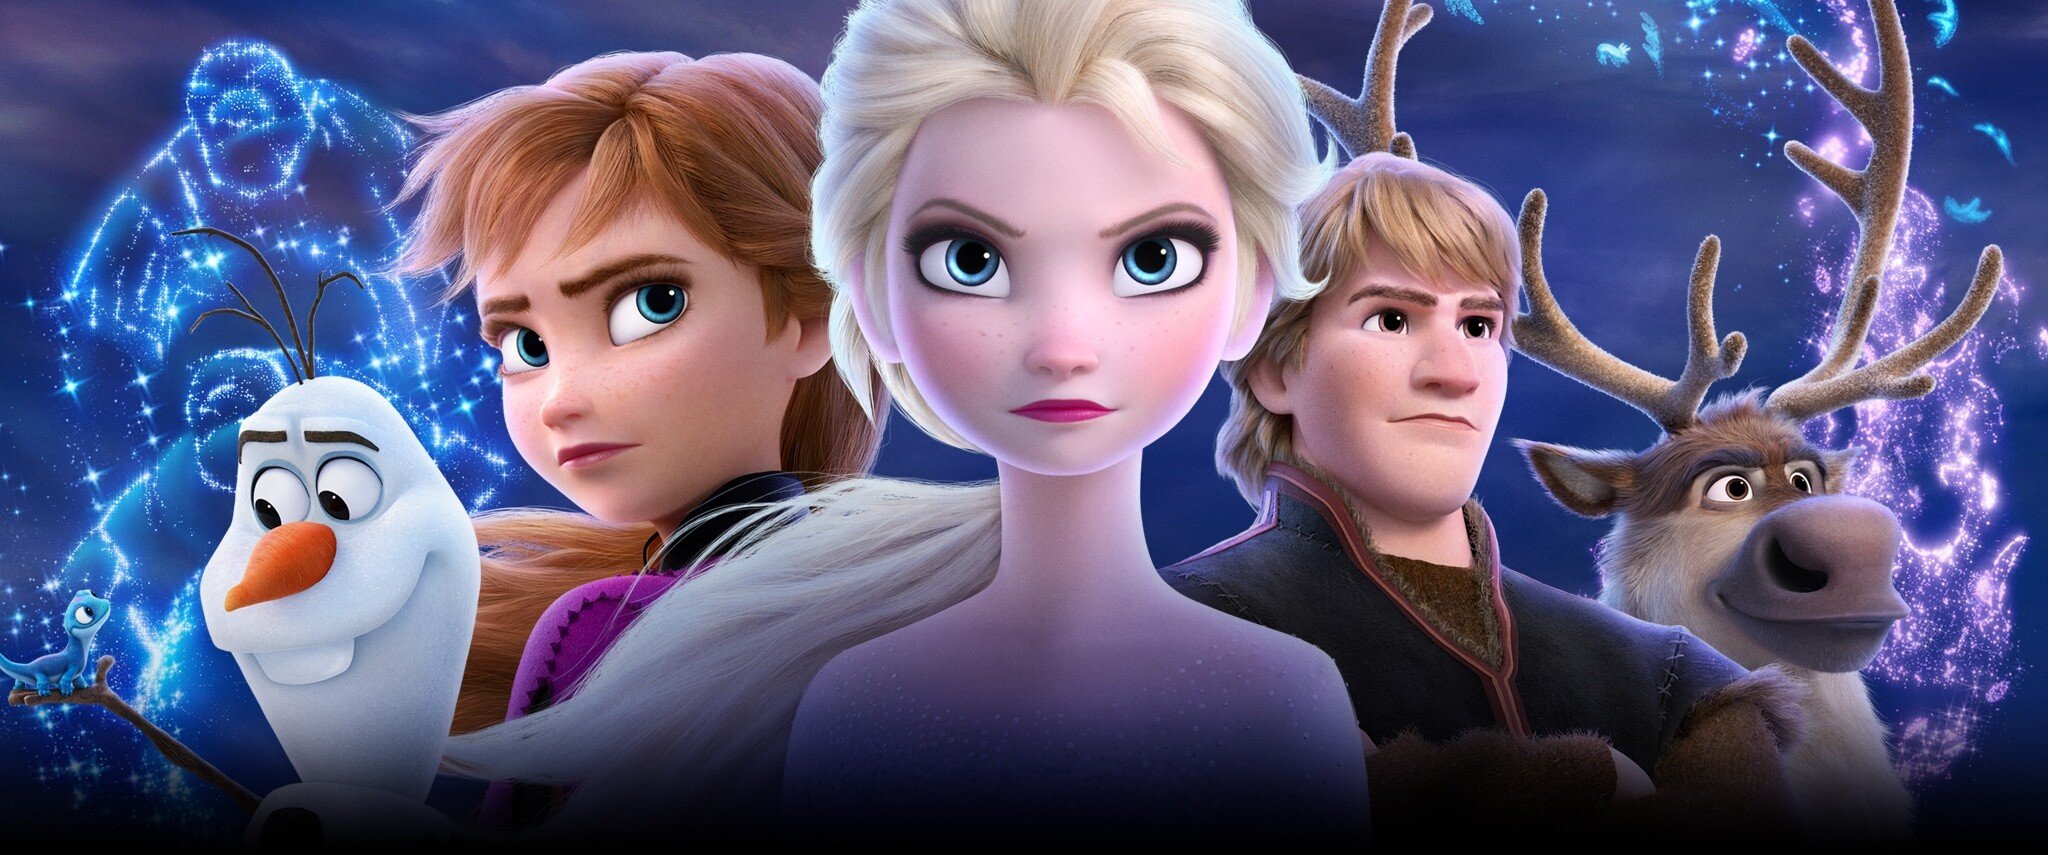 Anna, Elsa a miliardy dolarů podruhé. Vítejte v království Frozen, světě věčně otevřených peněženek